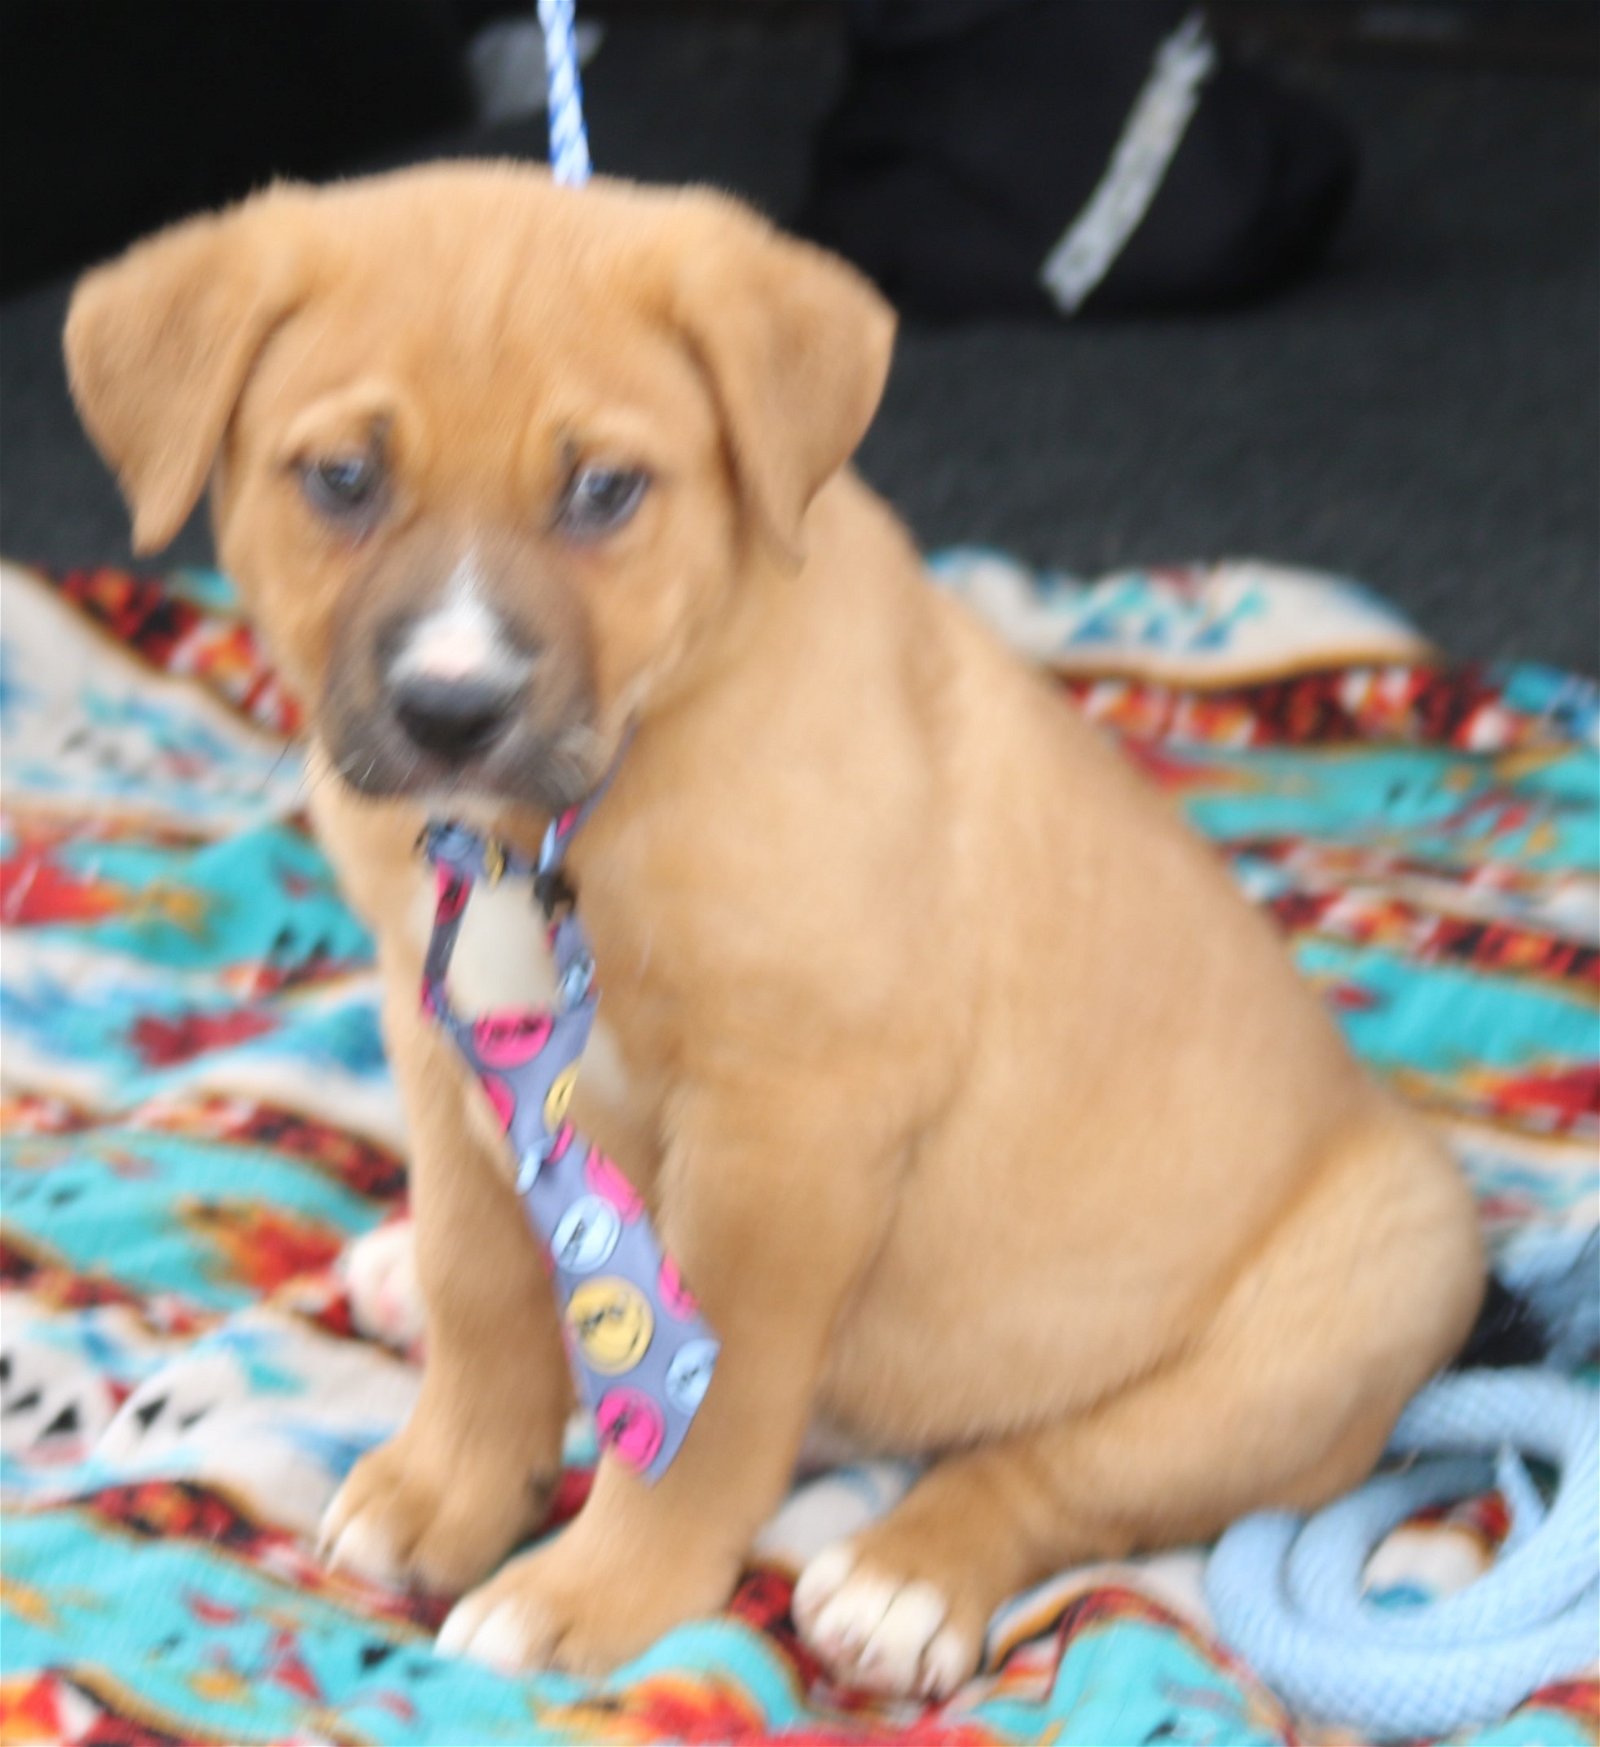 adoptable Dog in Brattleboro, VT named Allister